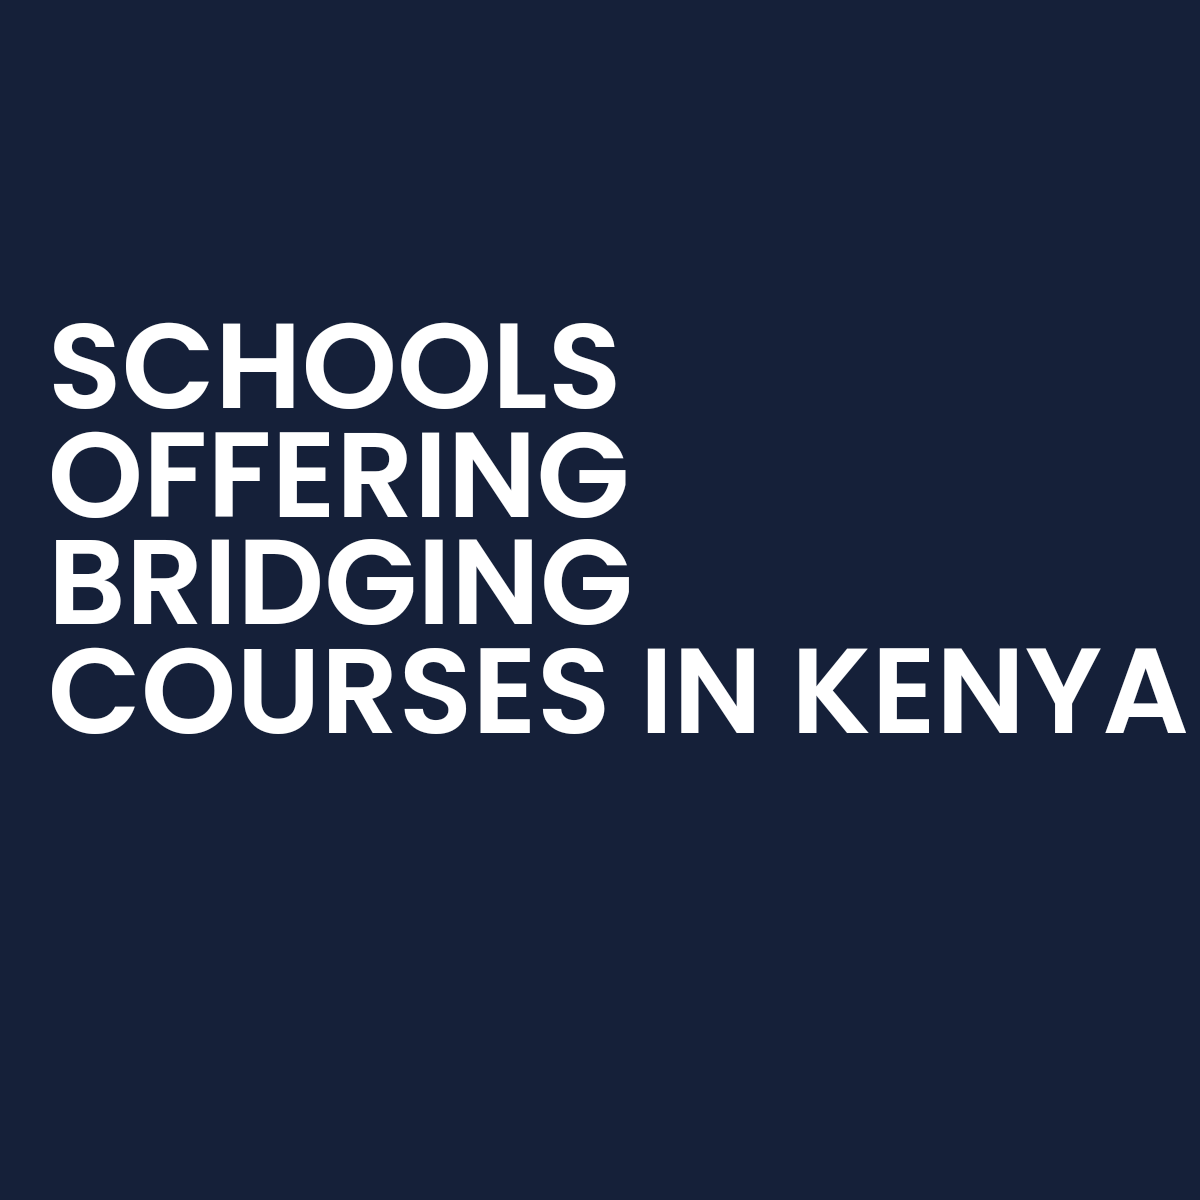 Schools Offering Bridging Courses in Kenya